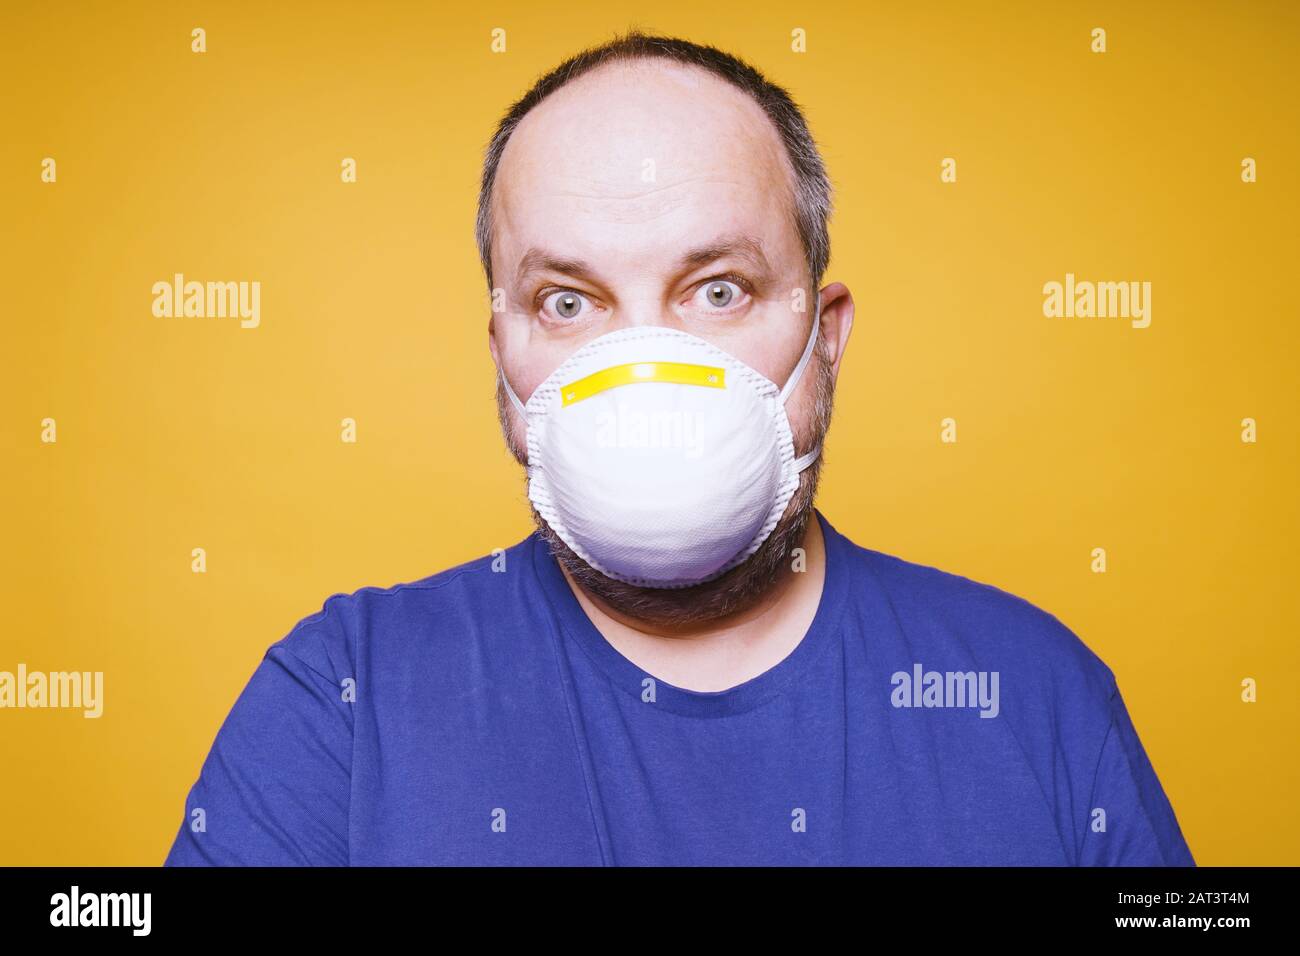 Mann mit Gesichtsmaske und Panik in seinen Augen - Konzept der Hysterie des Corona-Virus-Ausbruchs Stockfoto